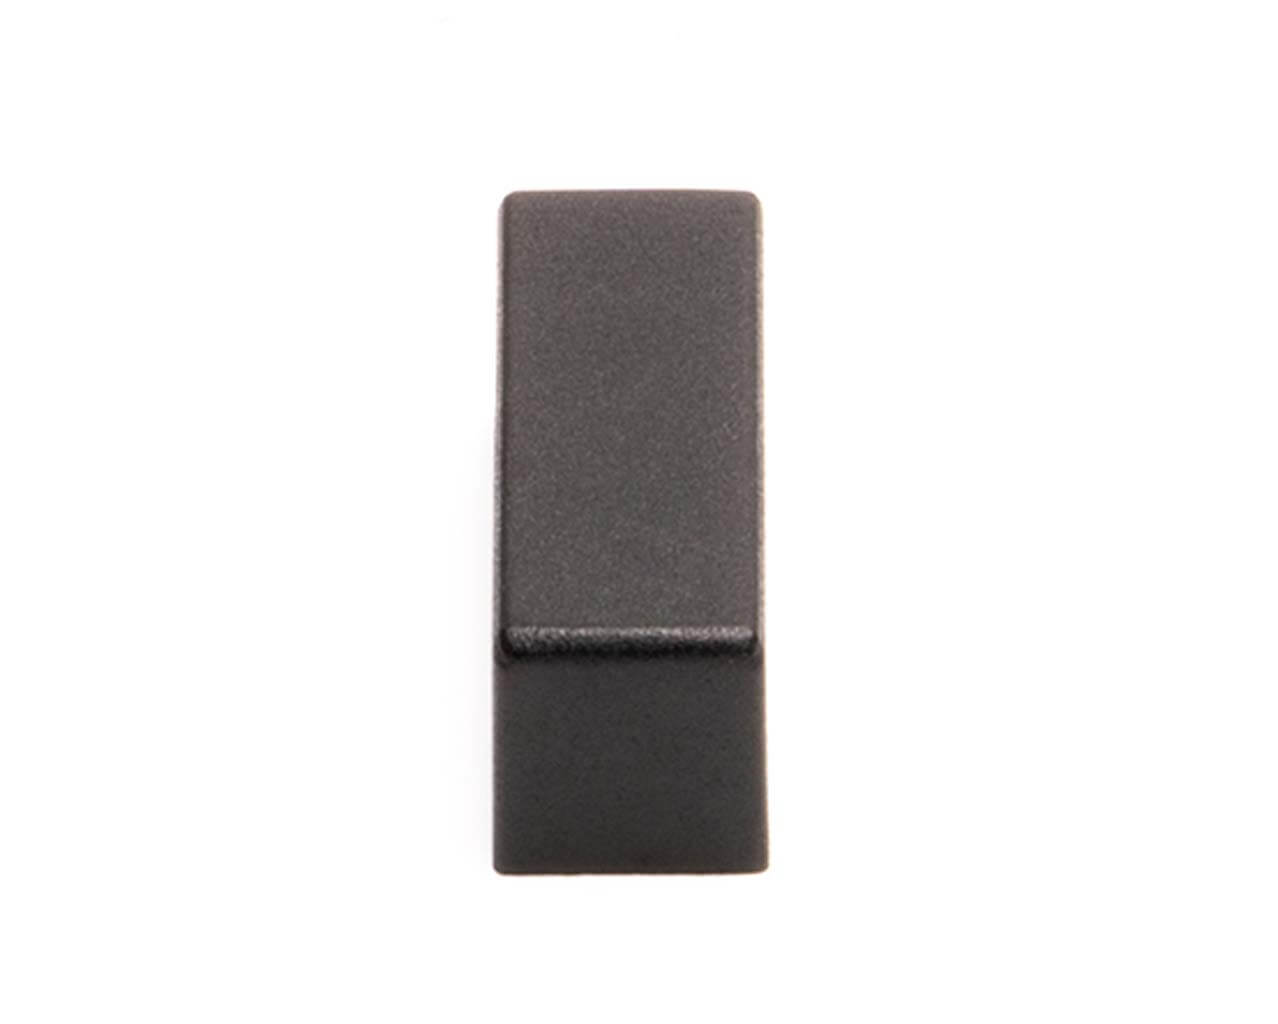 PrimoChill 4 Pin Molex Dust Cover - Black - 10 Pack